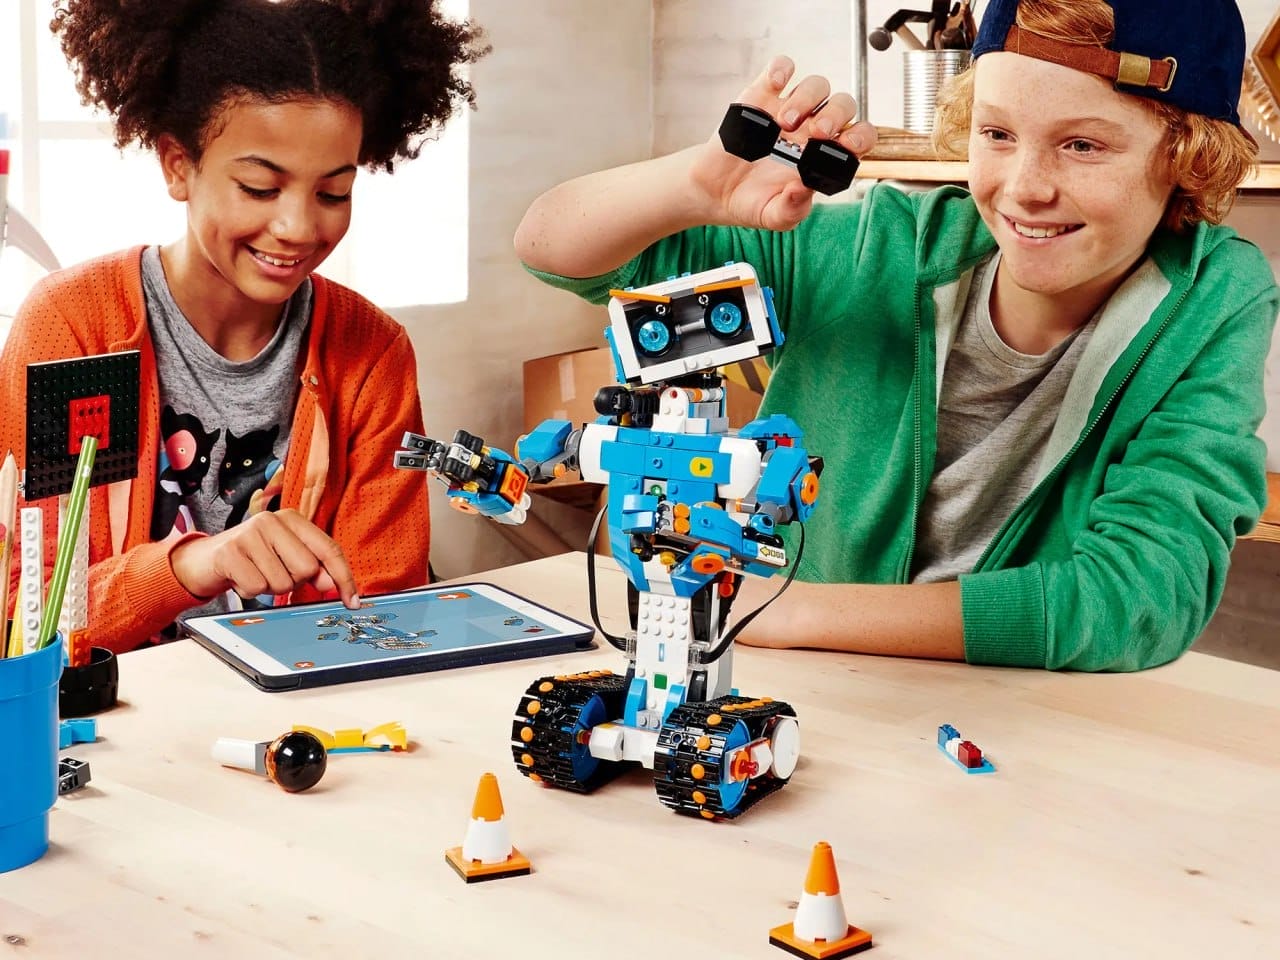 Zwei Kinder bauen und programmieren einen Lego Boost Roboter, den sie aus Bauklötzen gebaut haben. Auf dem Tisch liegen ein Tablet und verschiedene Kleinteile.